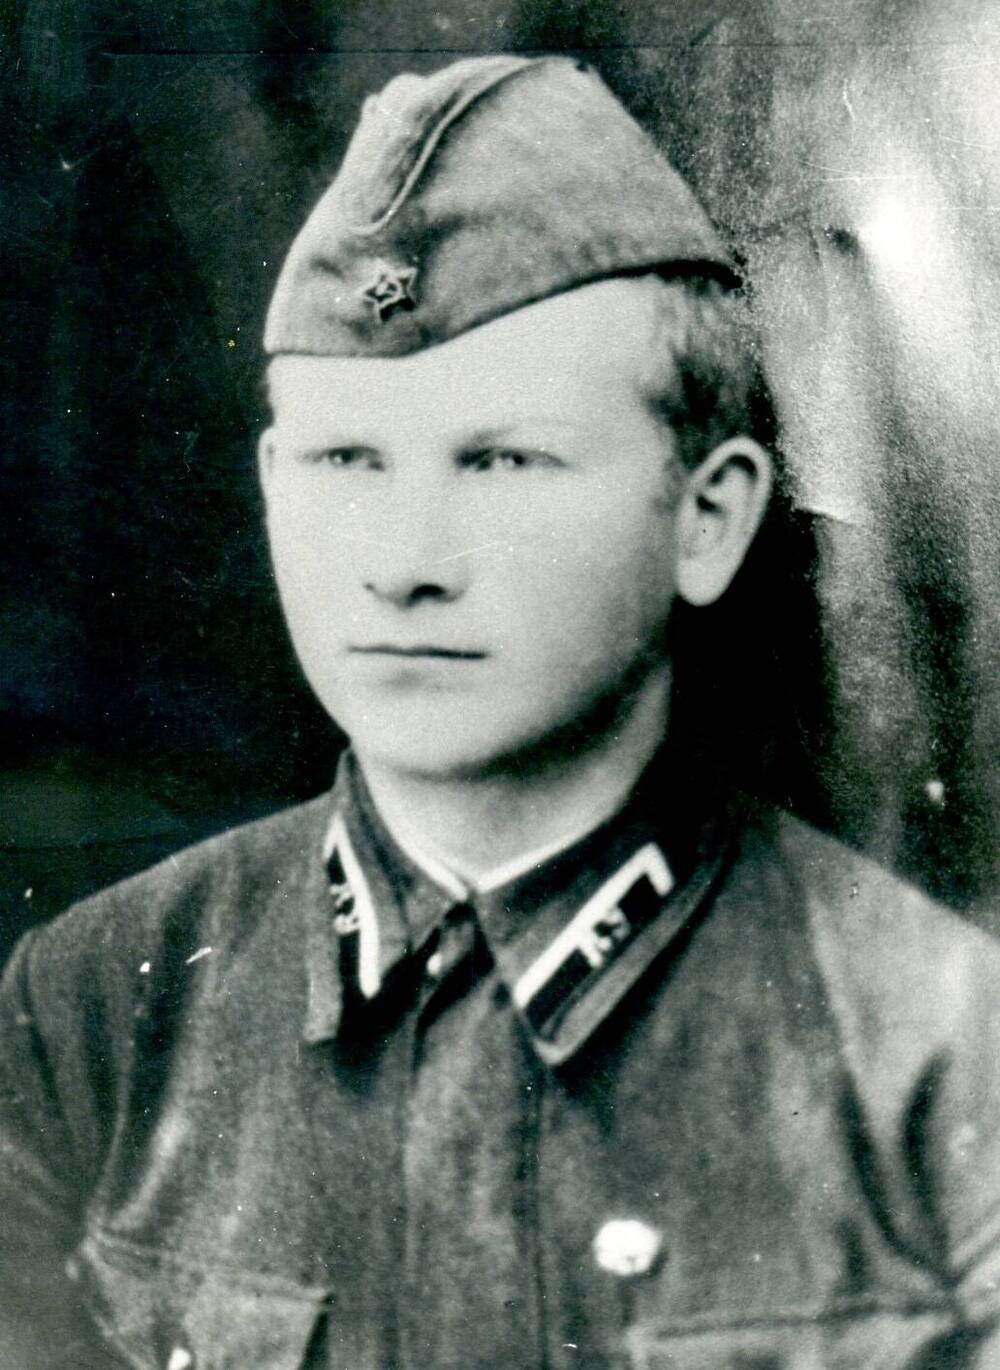 Фото командир танкового взвода из 79 танковой бригады 19 КПТК, лейтенант Лебедев Евгений Иванович, погиб в боях на Курской дуге.